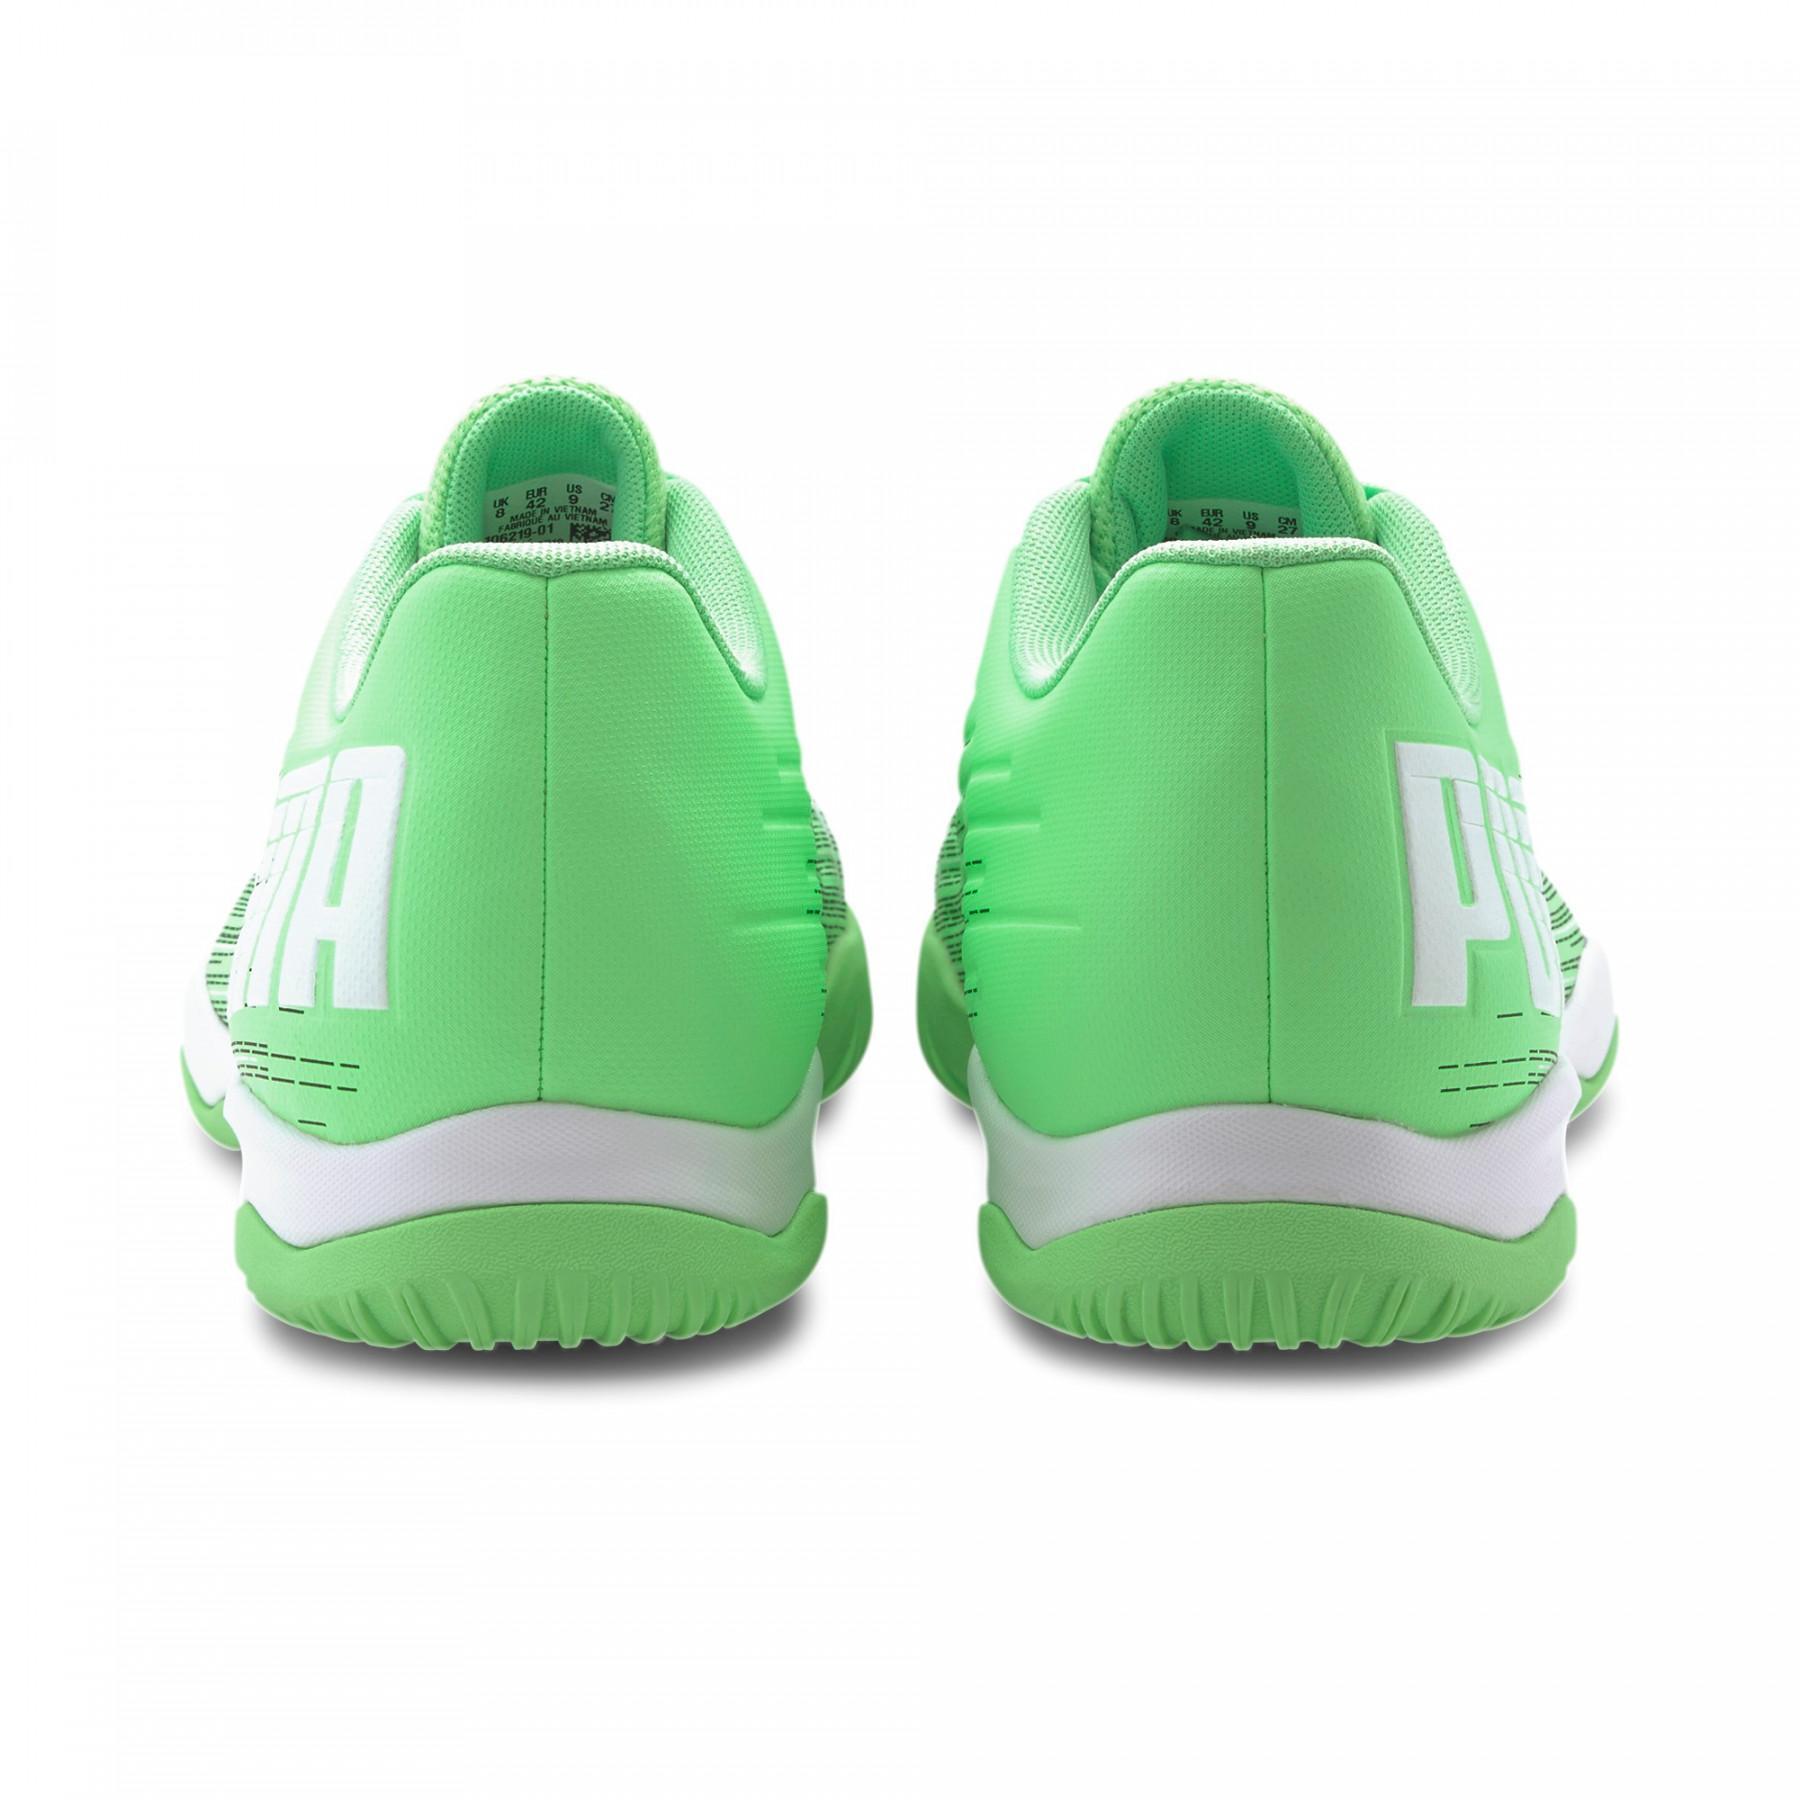 Sapatos Puma Adrenalite 4.1